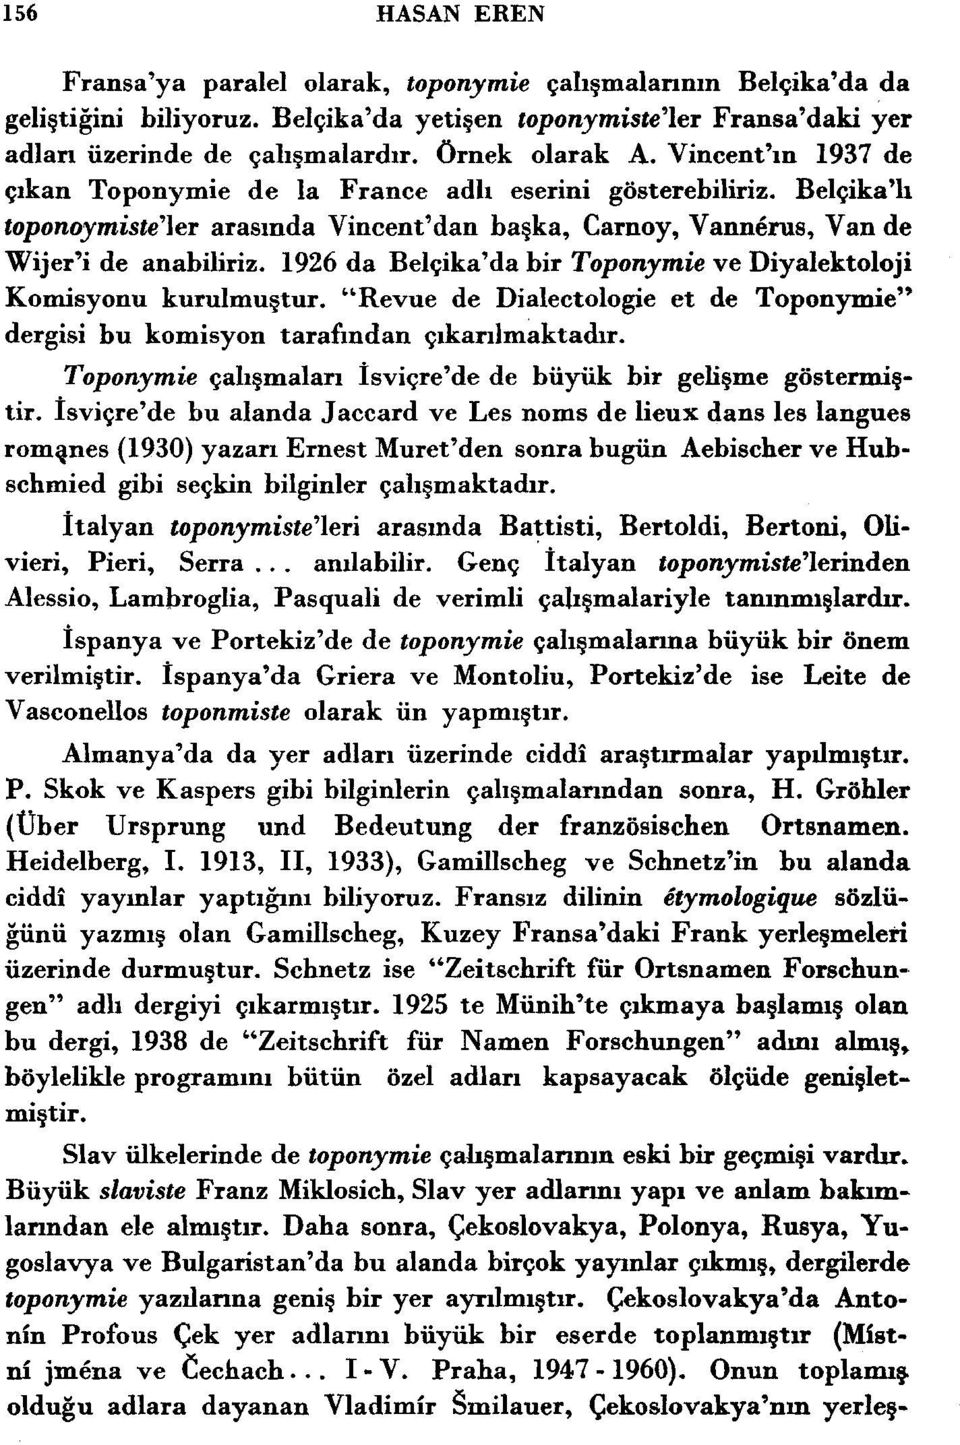 1926 da Belpika'da bir Toponymie ve Diyalektoloji Kornisyonu kurulmugtur. "Revue de Dialectologie et de Toponymie" dergisi bu komisyon tarafindan gikarilmaktadir.